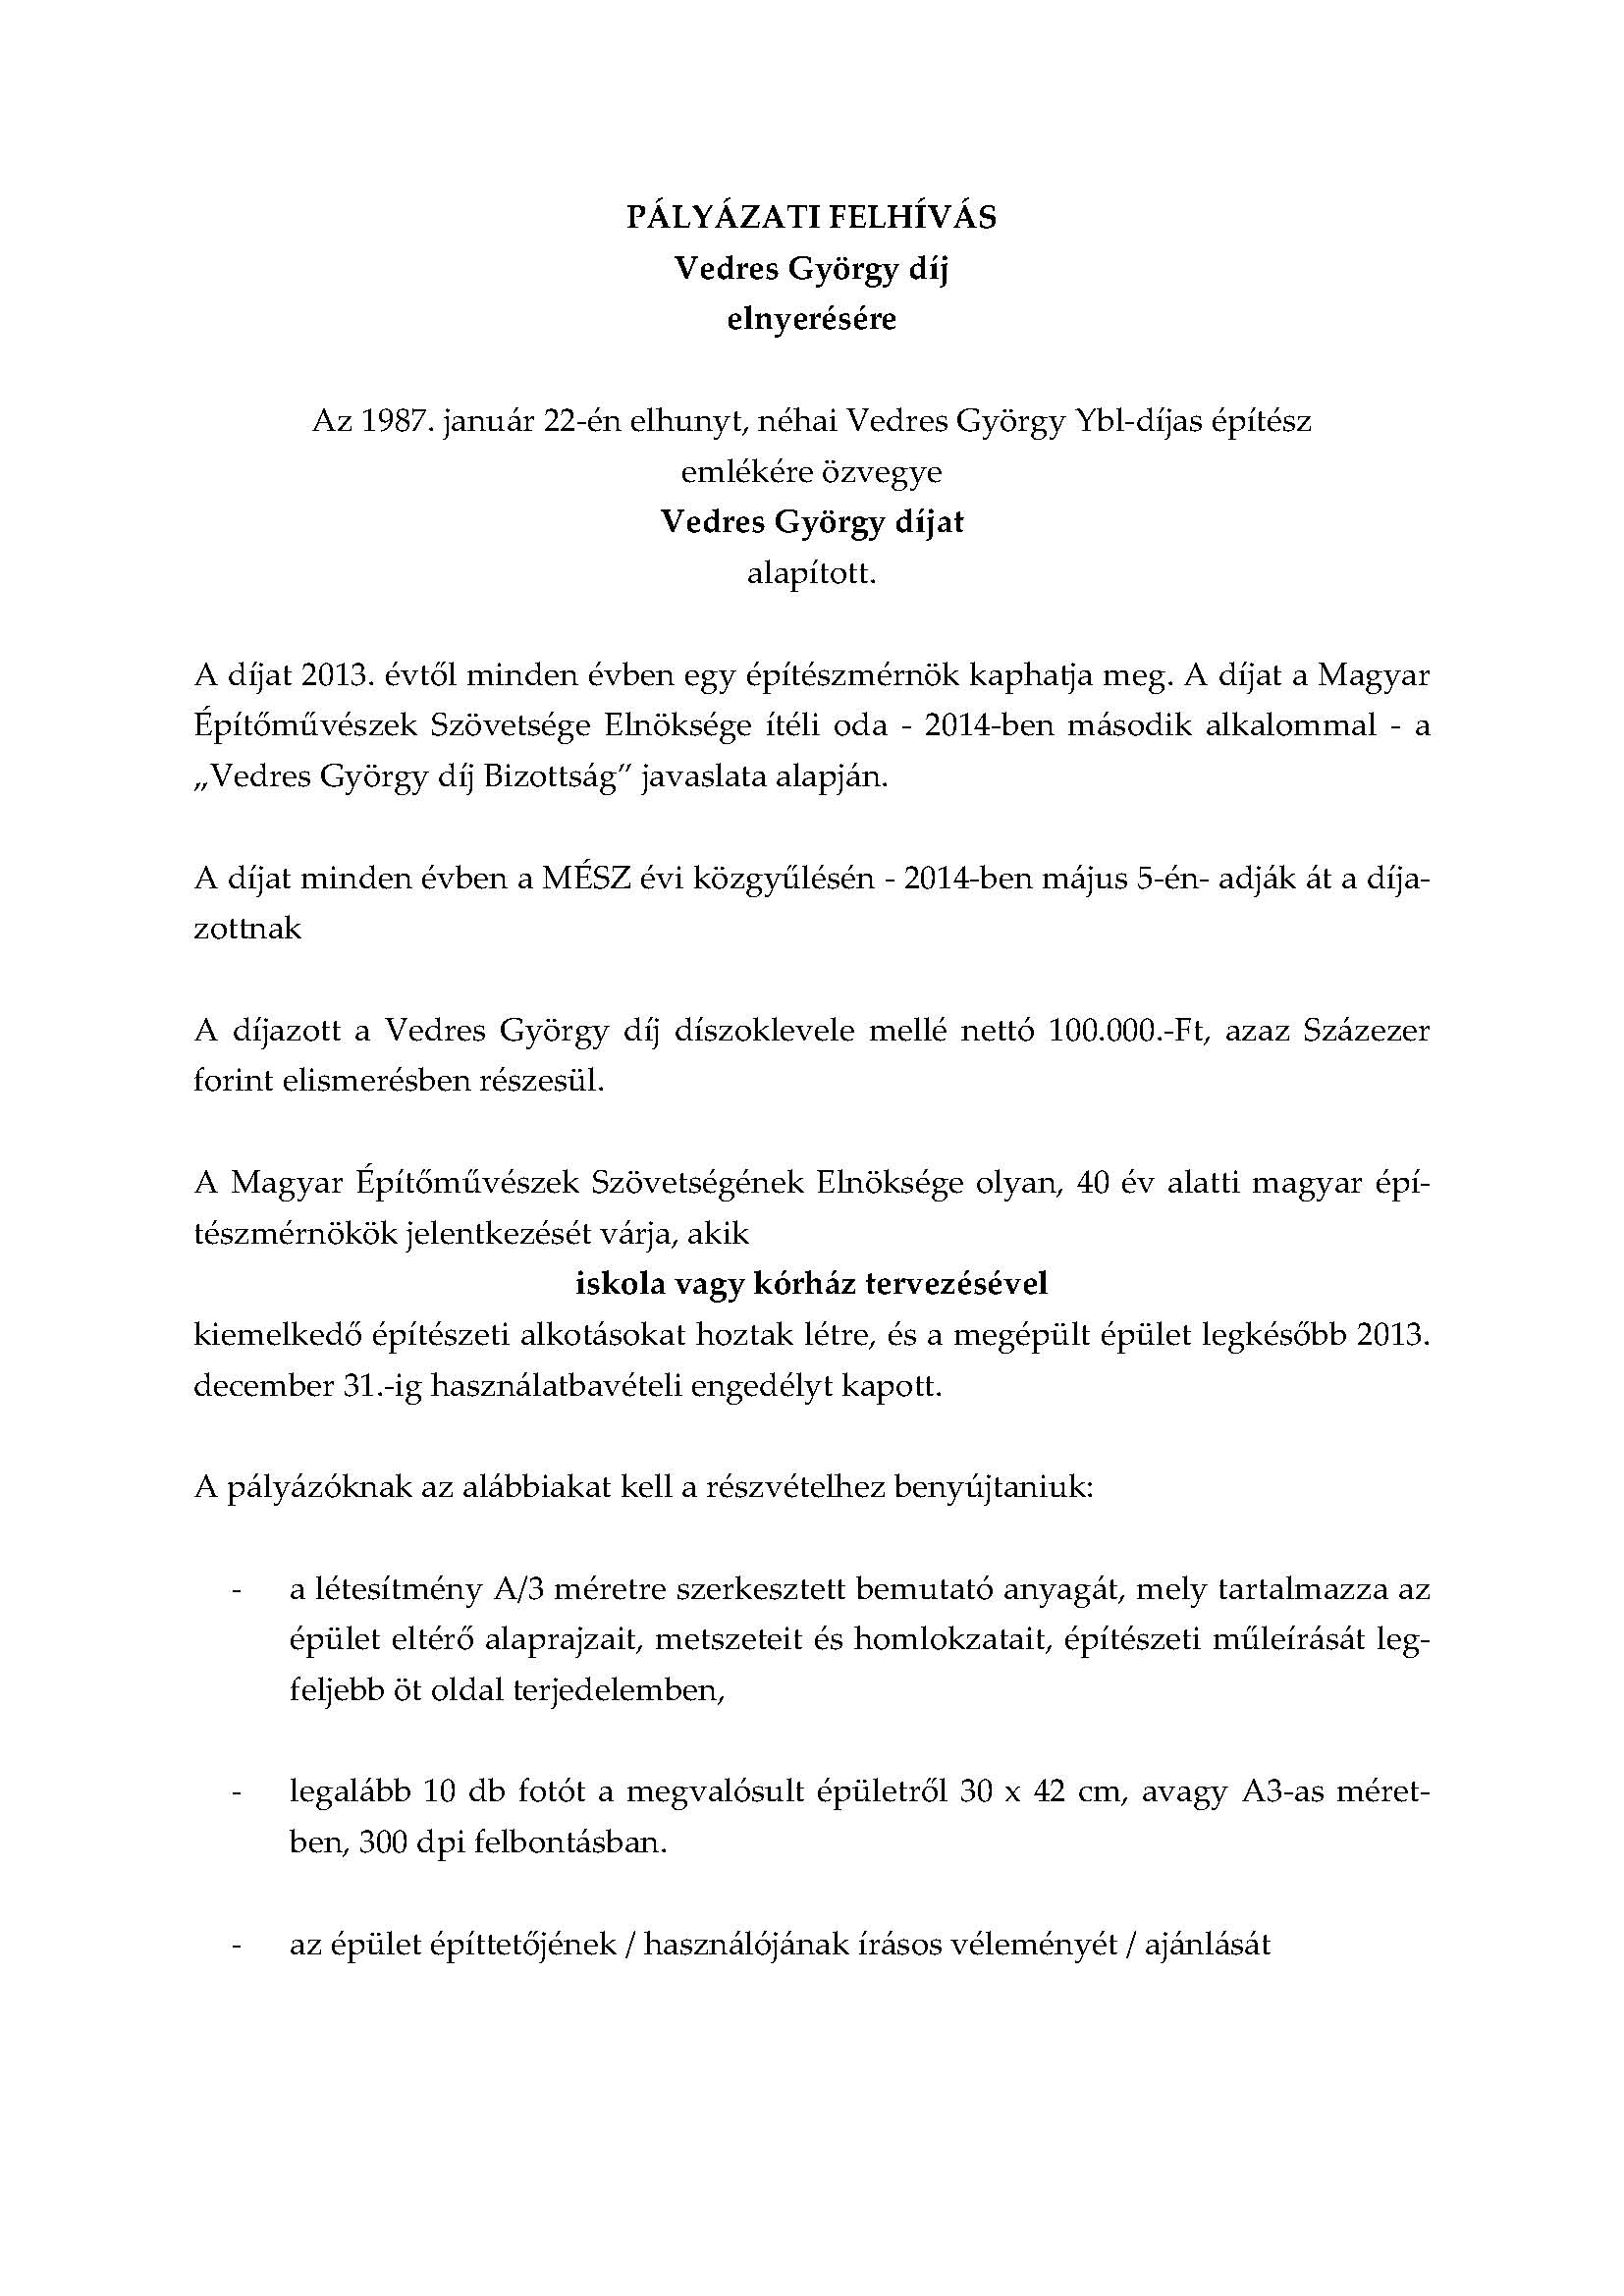 Vedres György díj_PÁLYÁZATI FELHÍVÁS_2014_mod1_Page_1